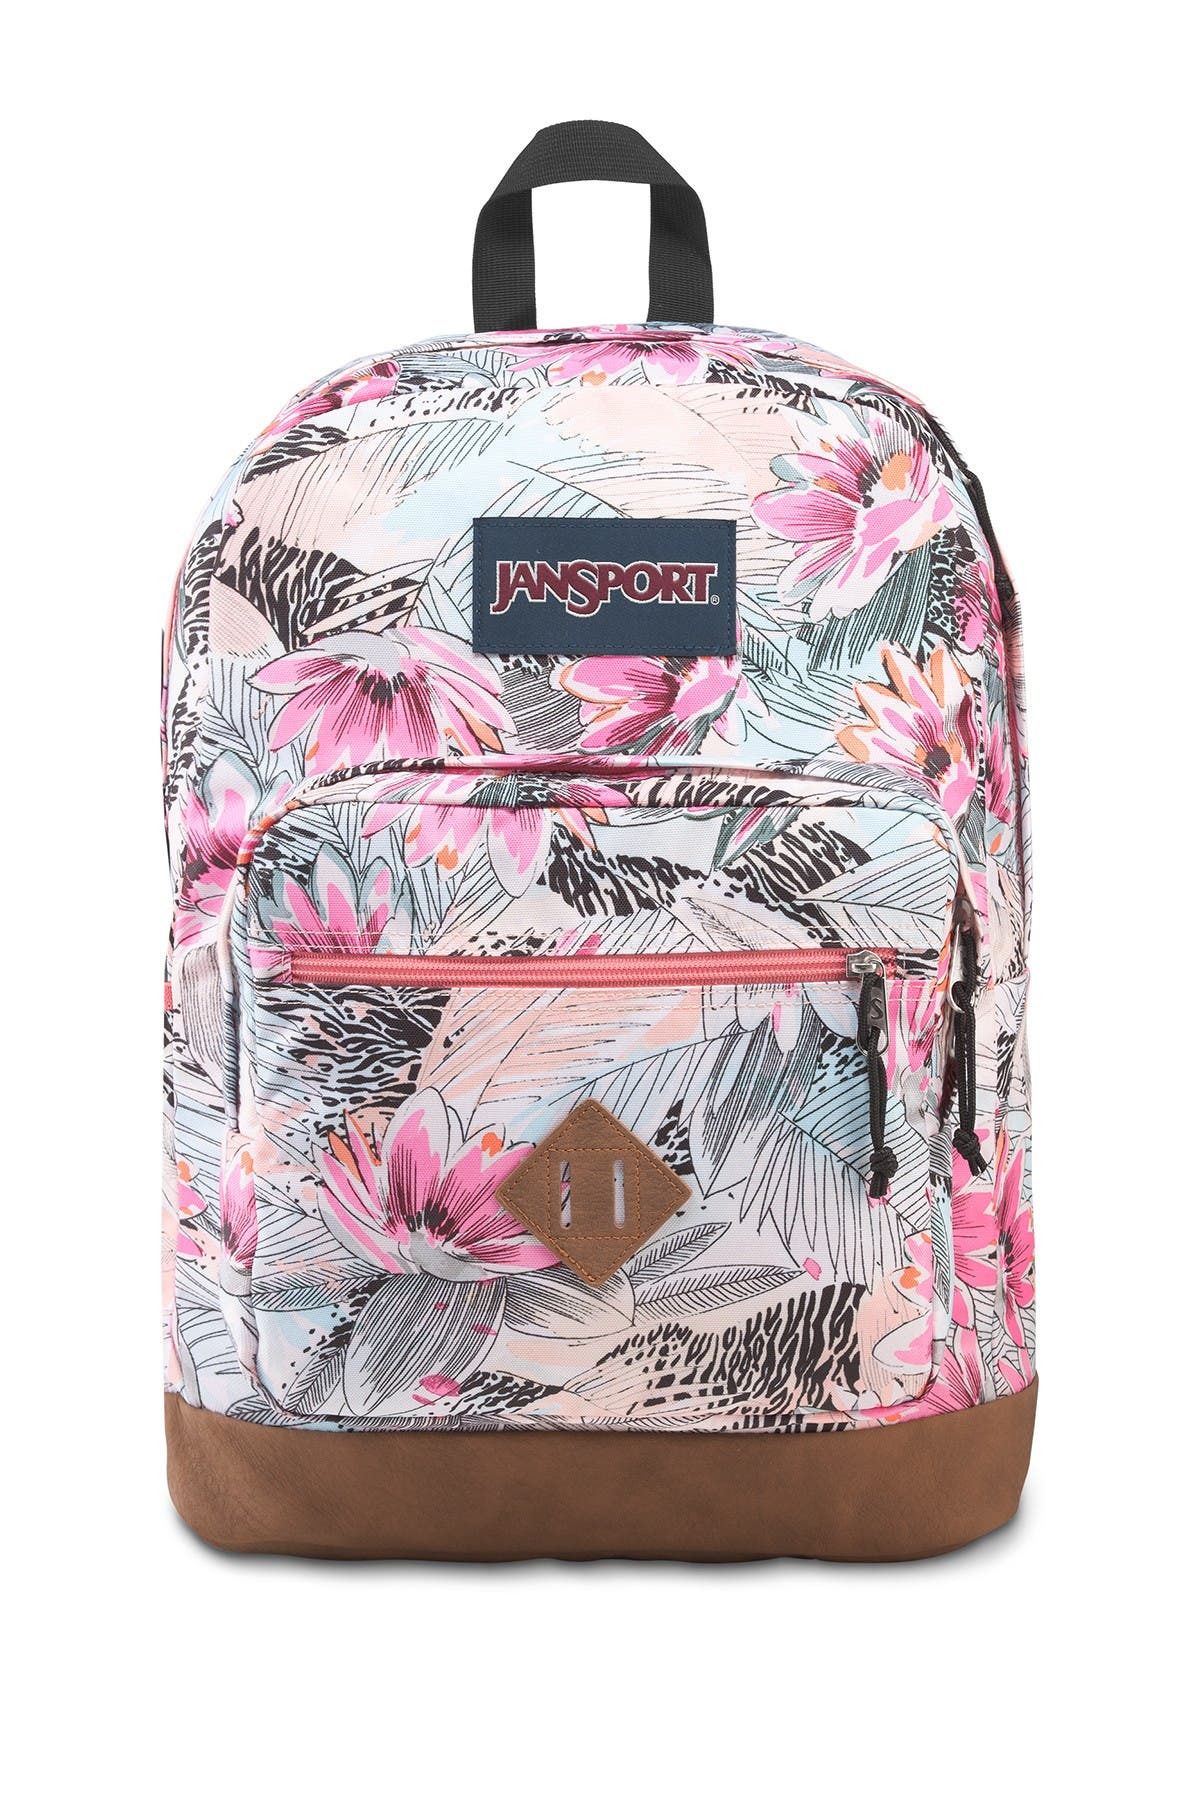 jansport pink flower backpack